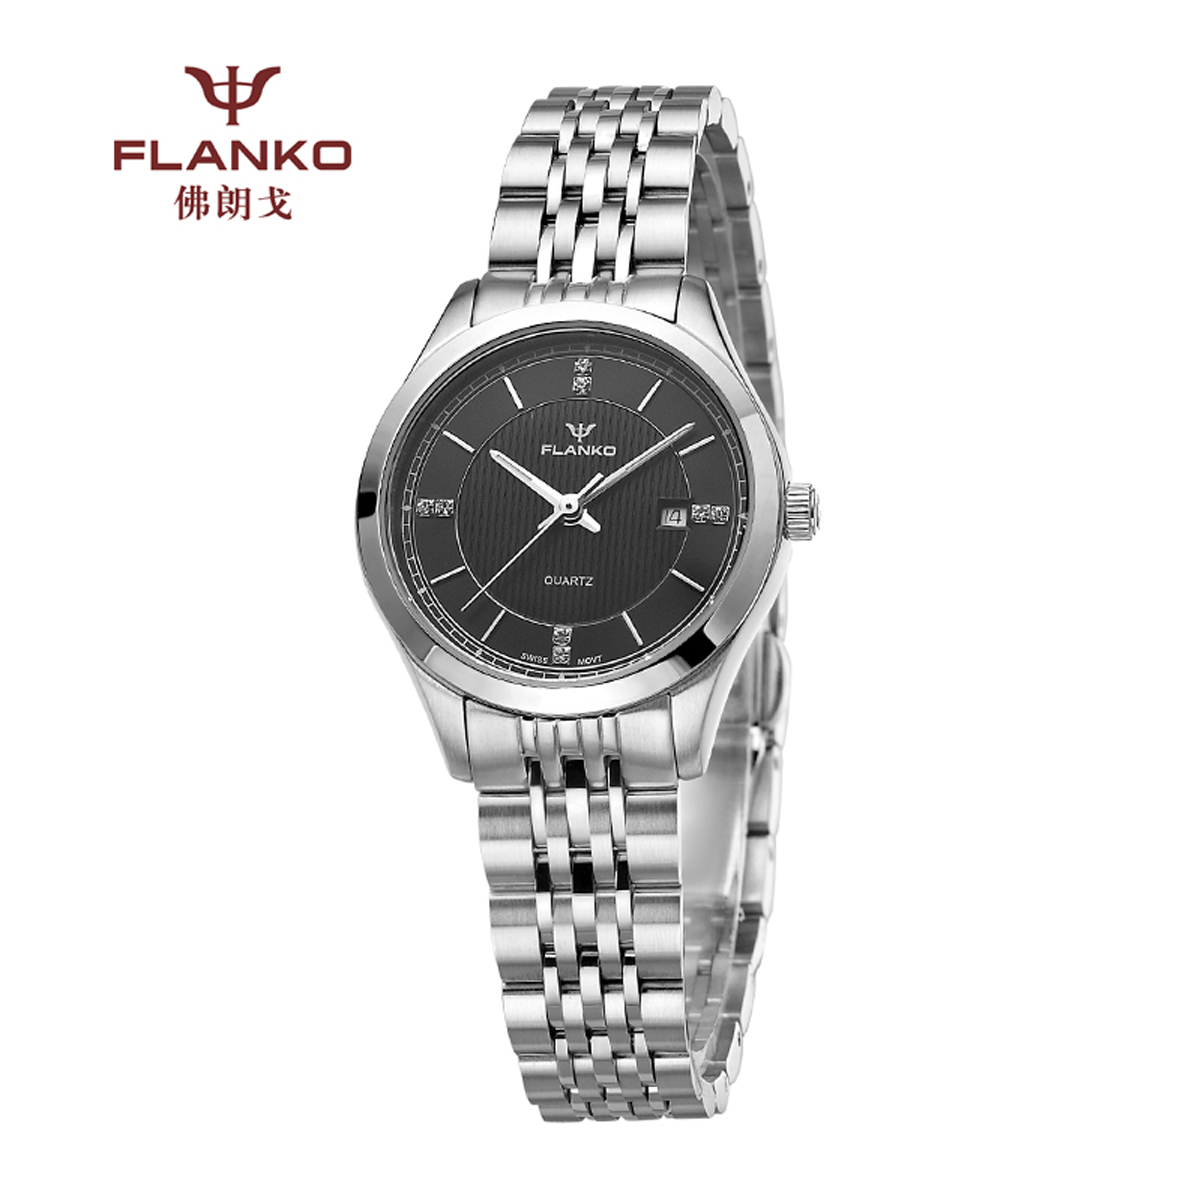 株洲超薄的女式腕表价格_女式腕表品牌相关-深圳市佛朗戈科技有限公司